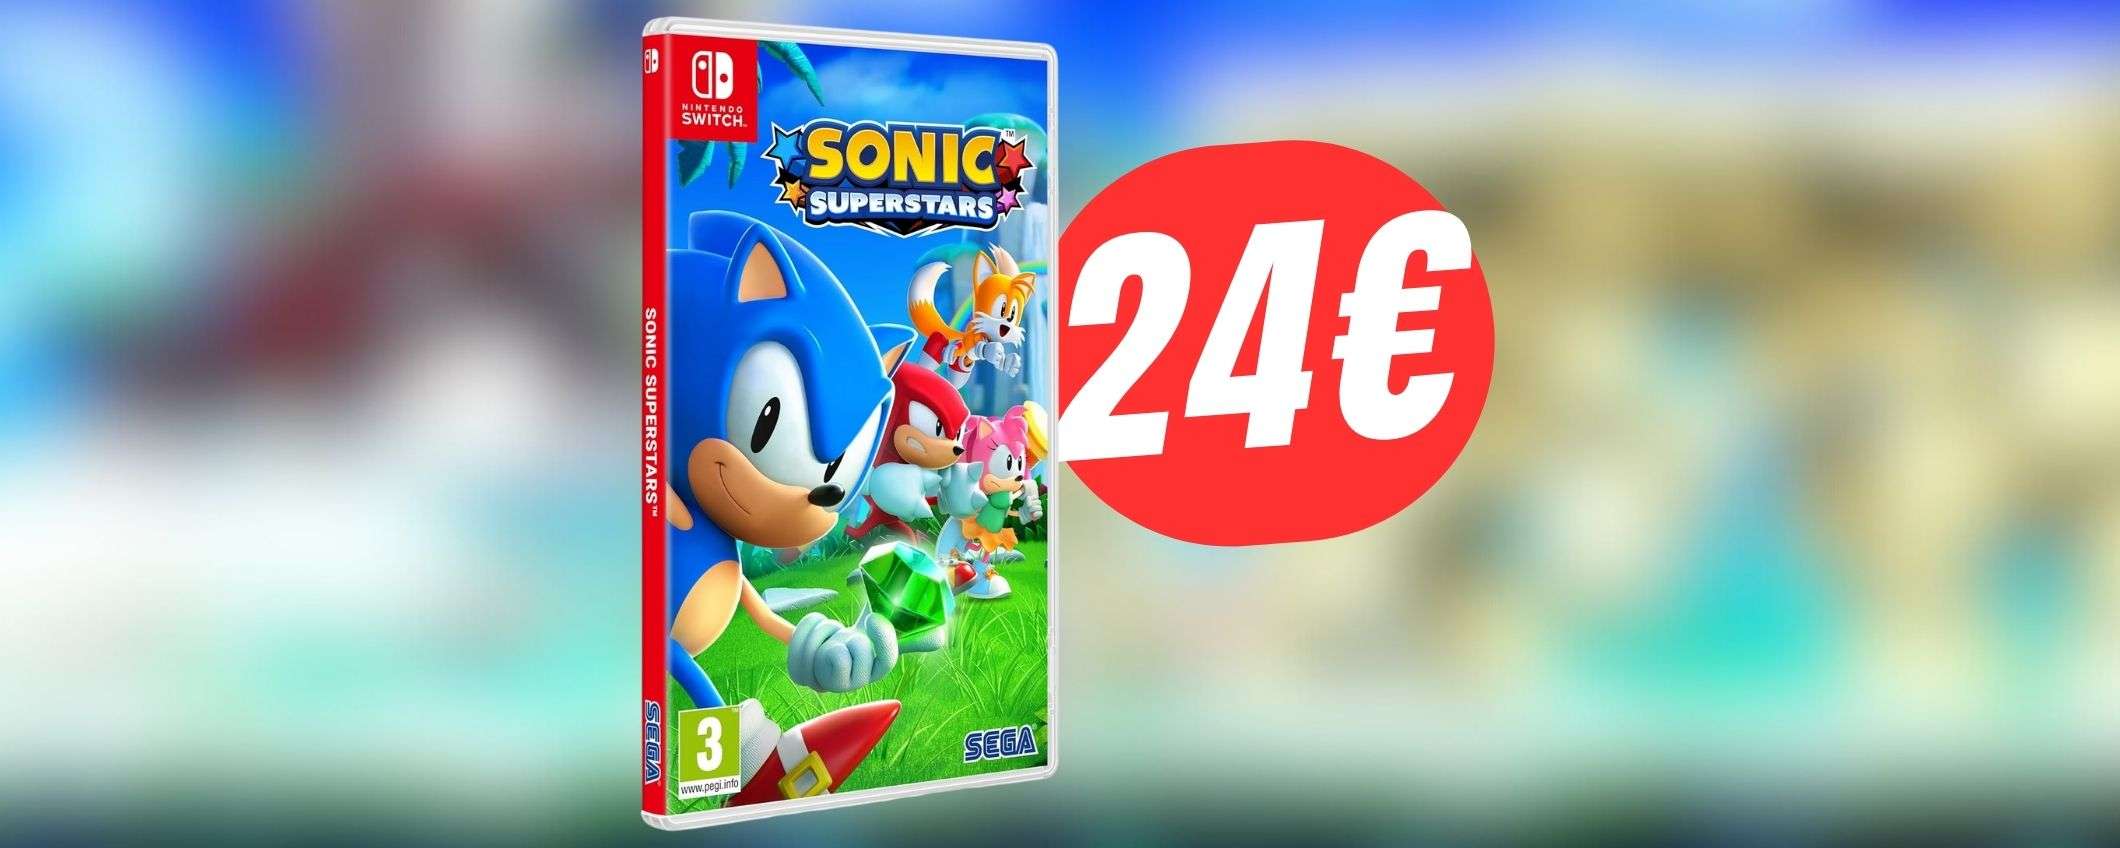 MINIMO STORICO per Sonic Superstars (Nintendo Switch): solo 24€!